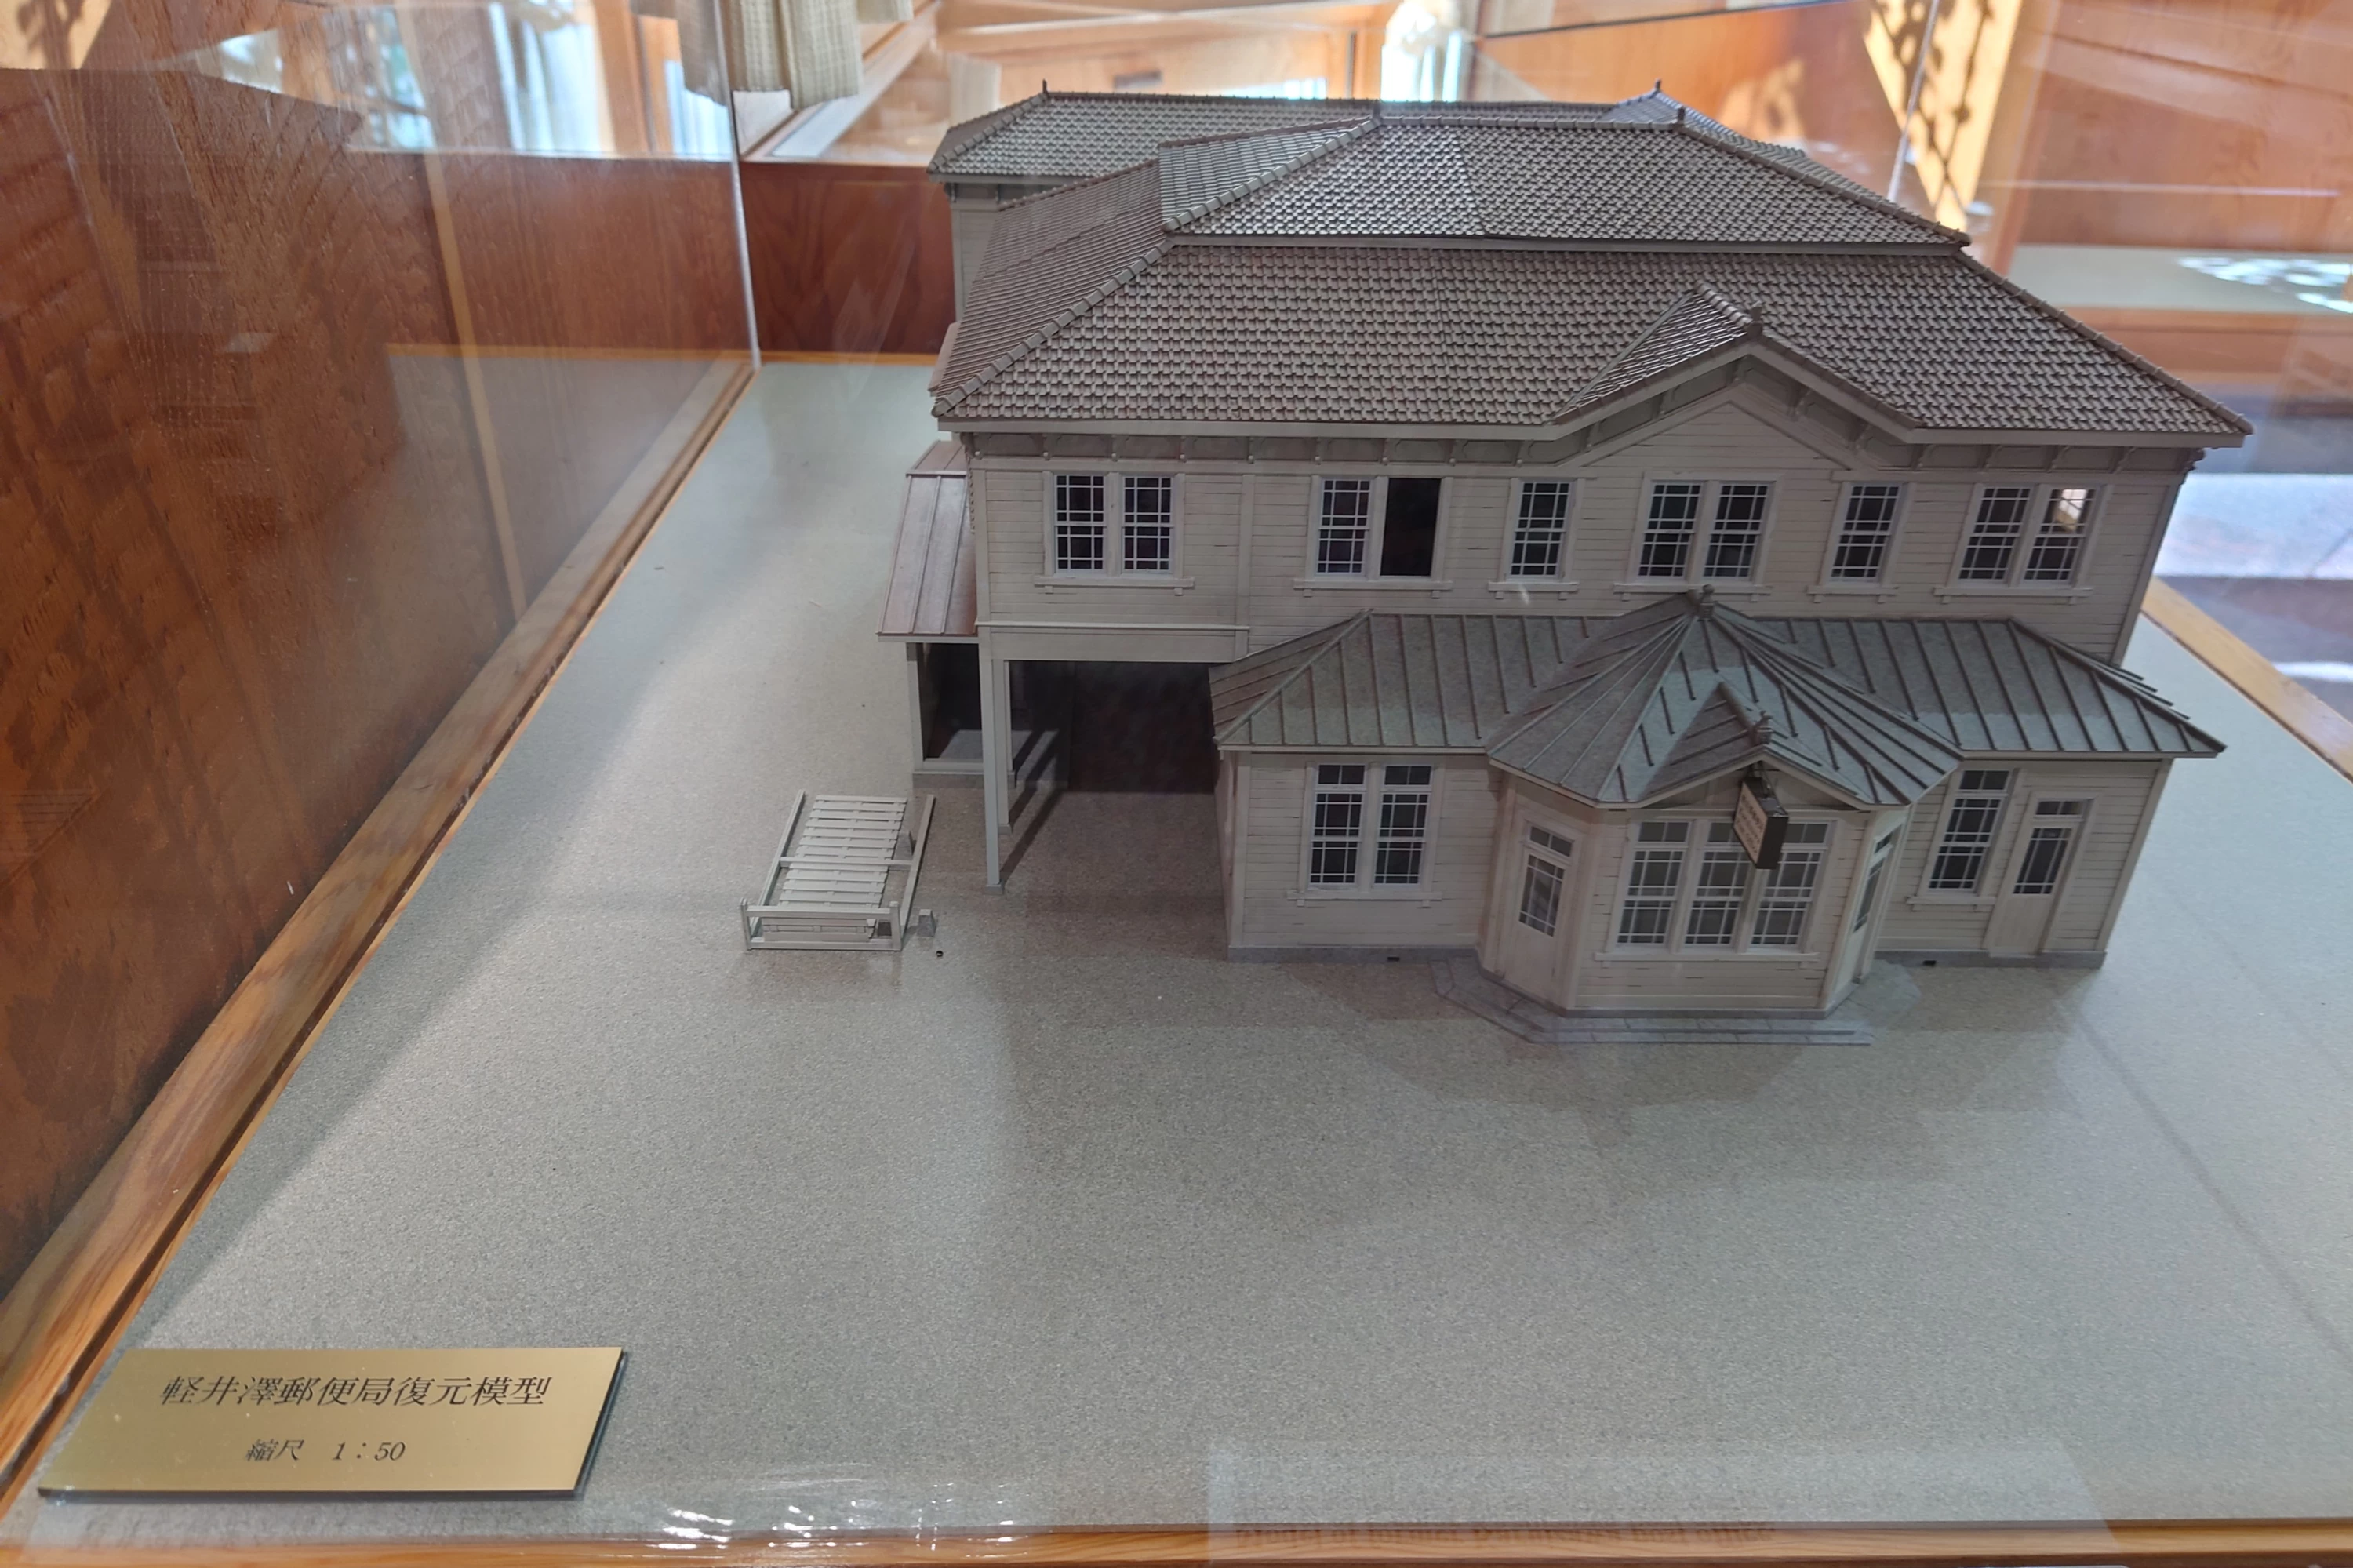 「軽井沢郵便局」の復元模型